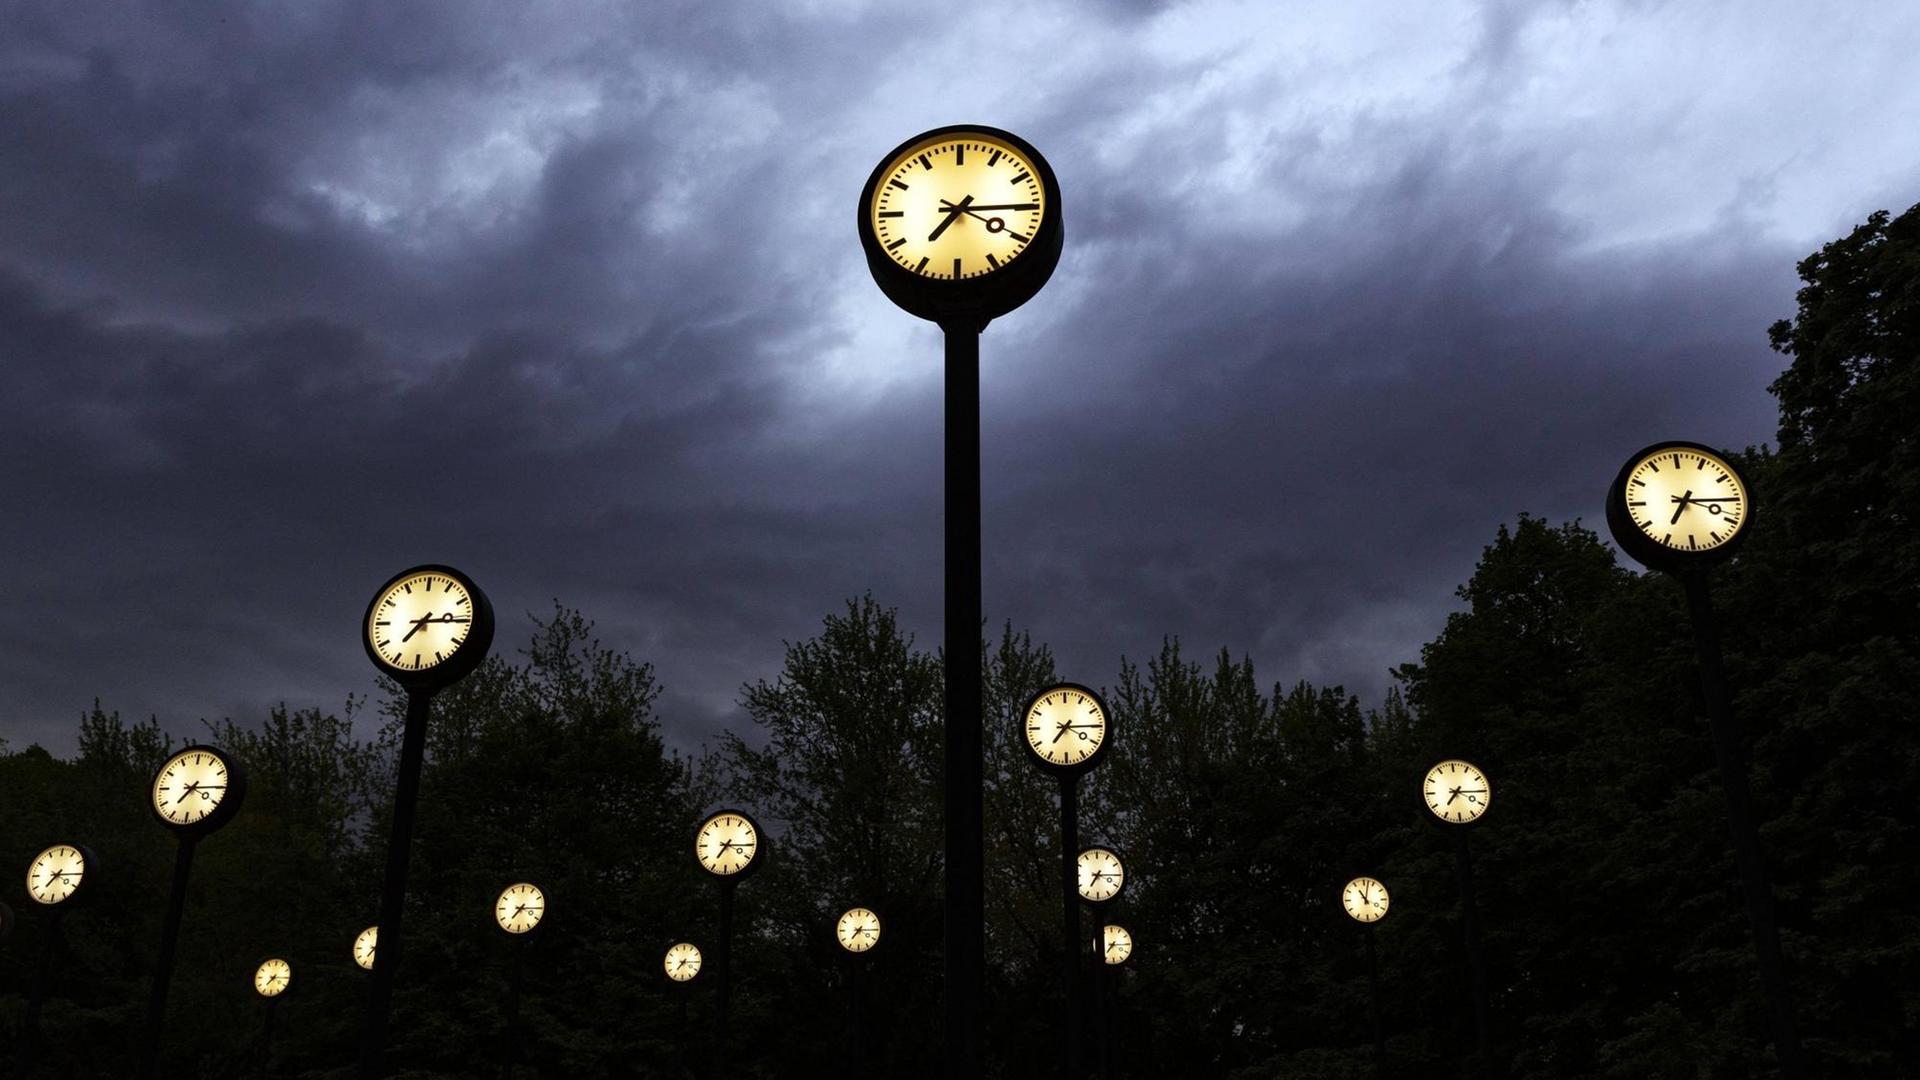 Mehrere Uhren mit beleuchtetem Zifferblatt stehen vor einem Wolkenhimmel in der Dämmerung.